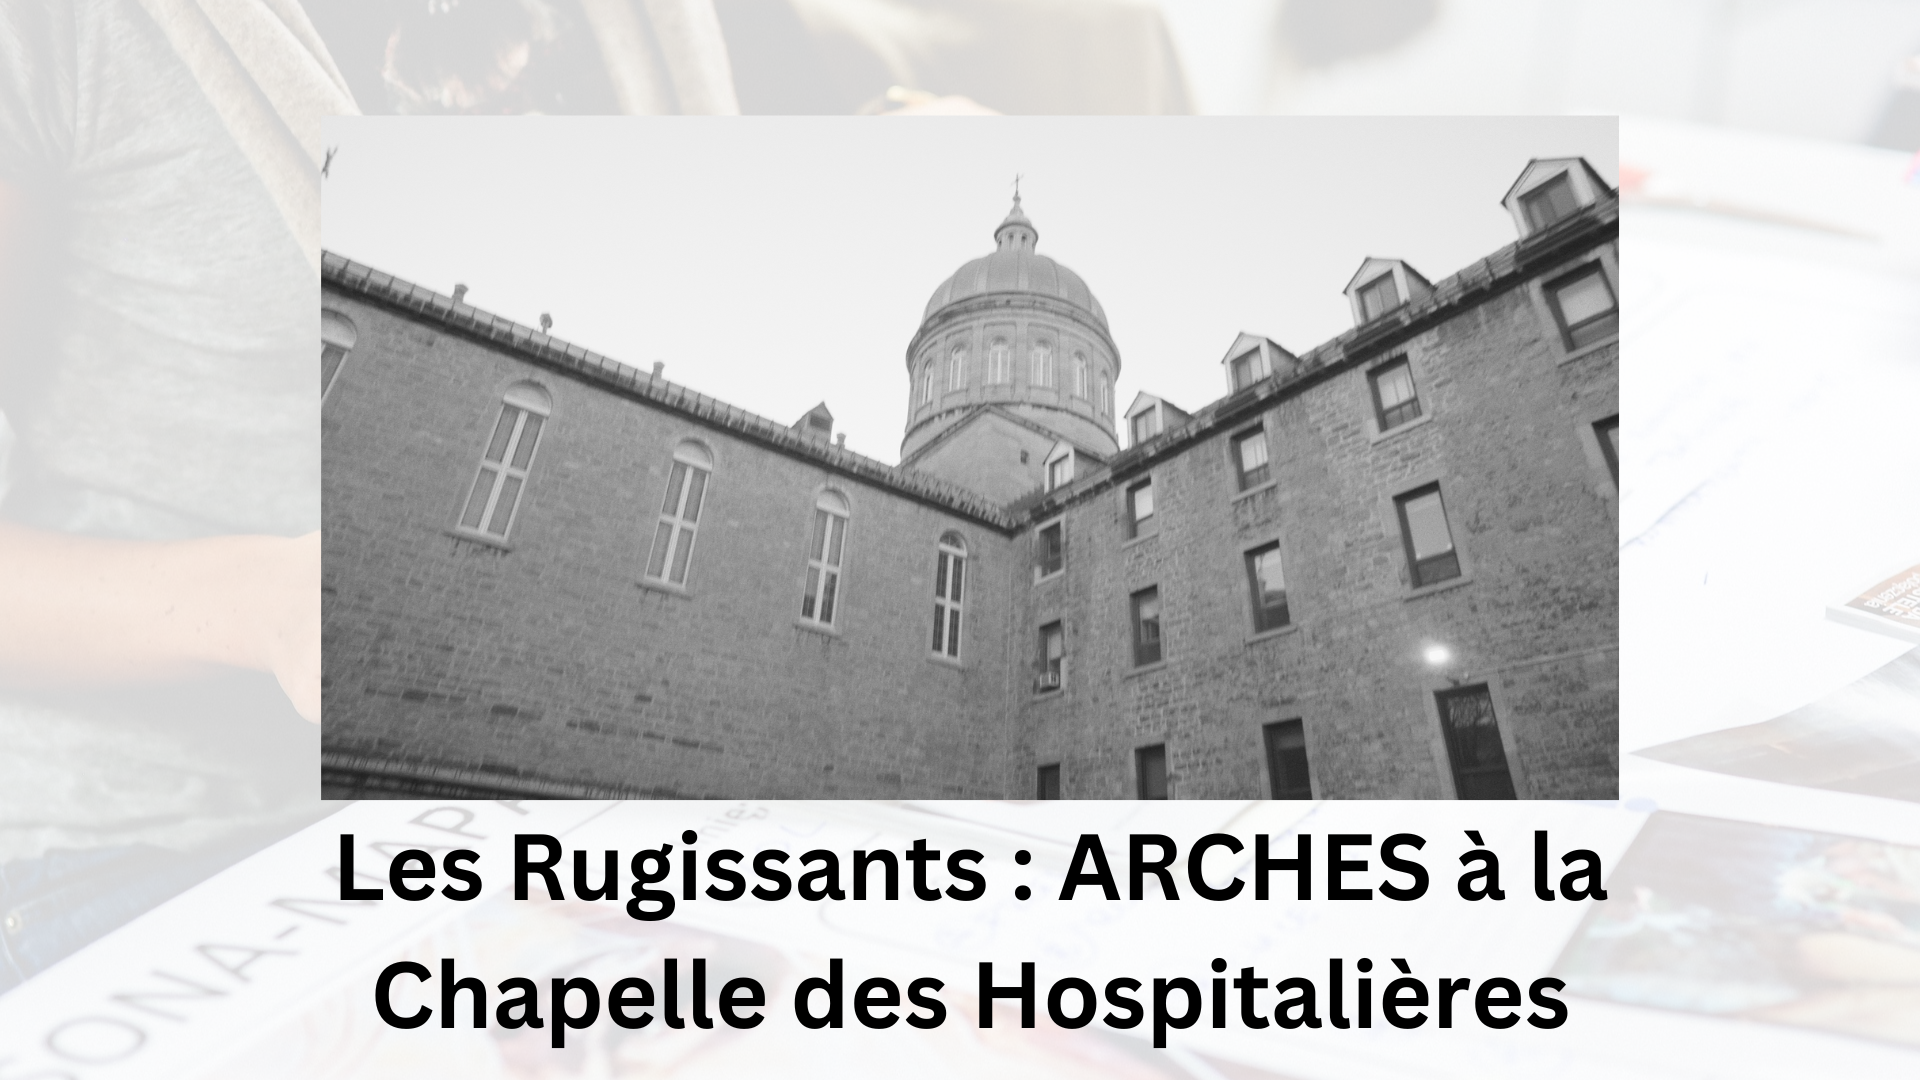 Les Rugissants : ARCHES à la Chapelle des Hospitalières